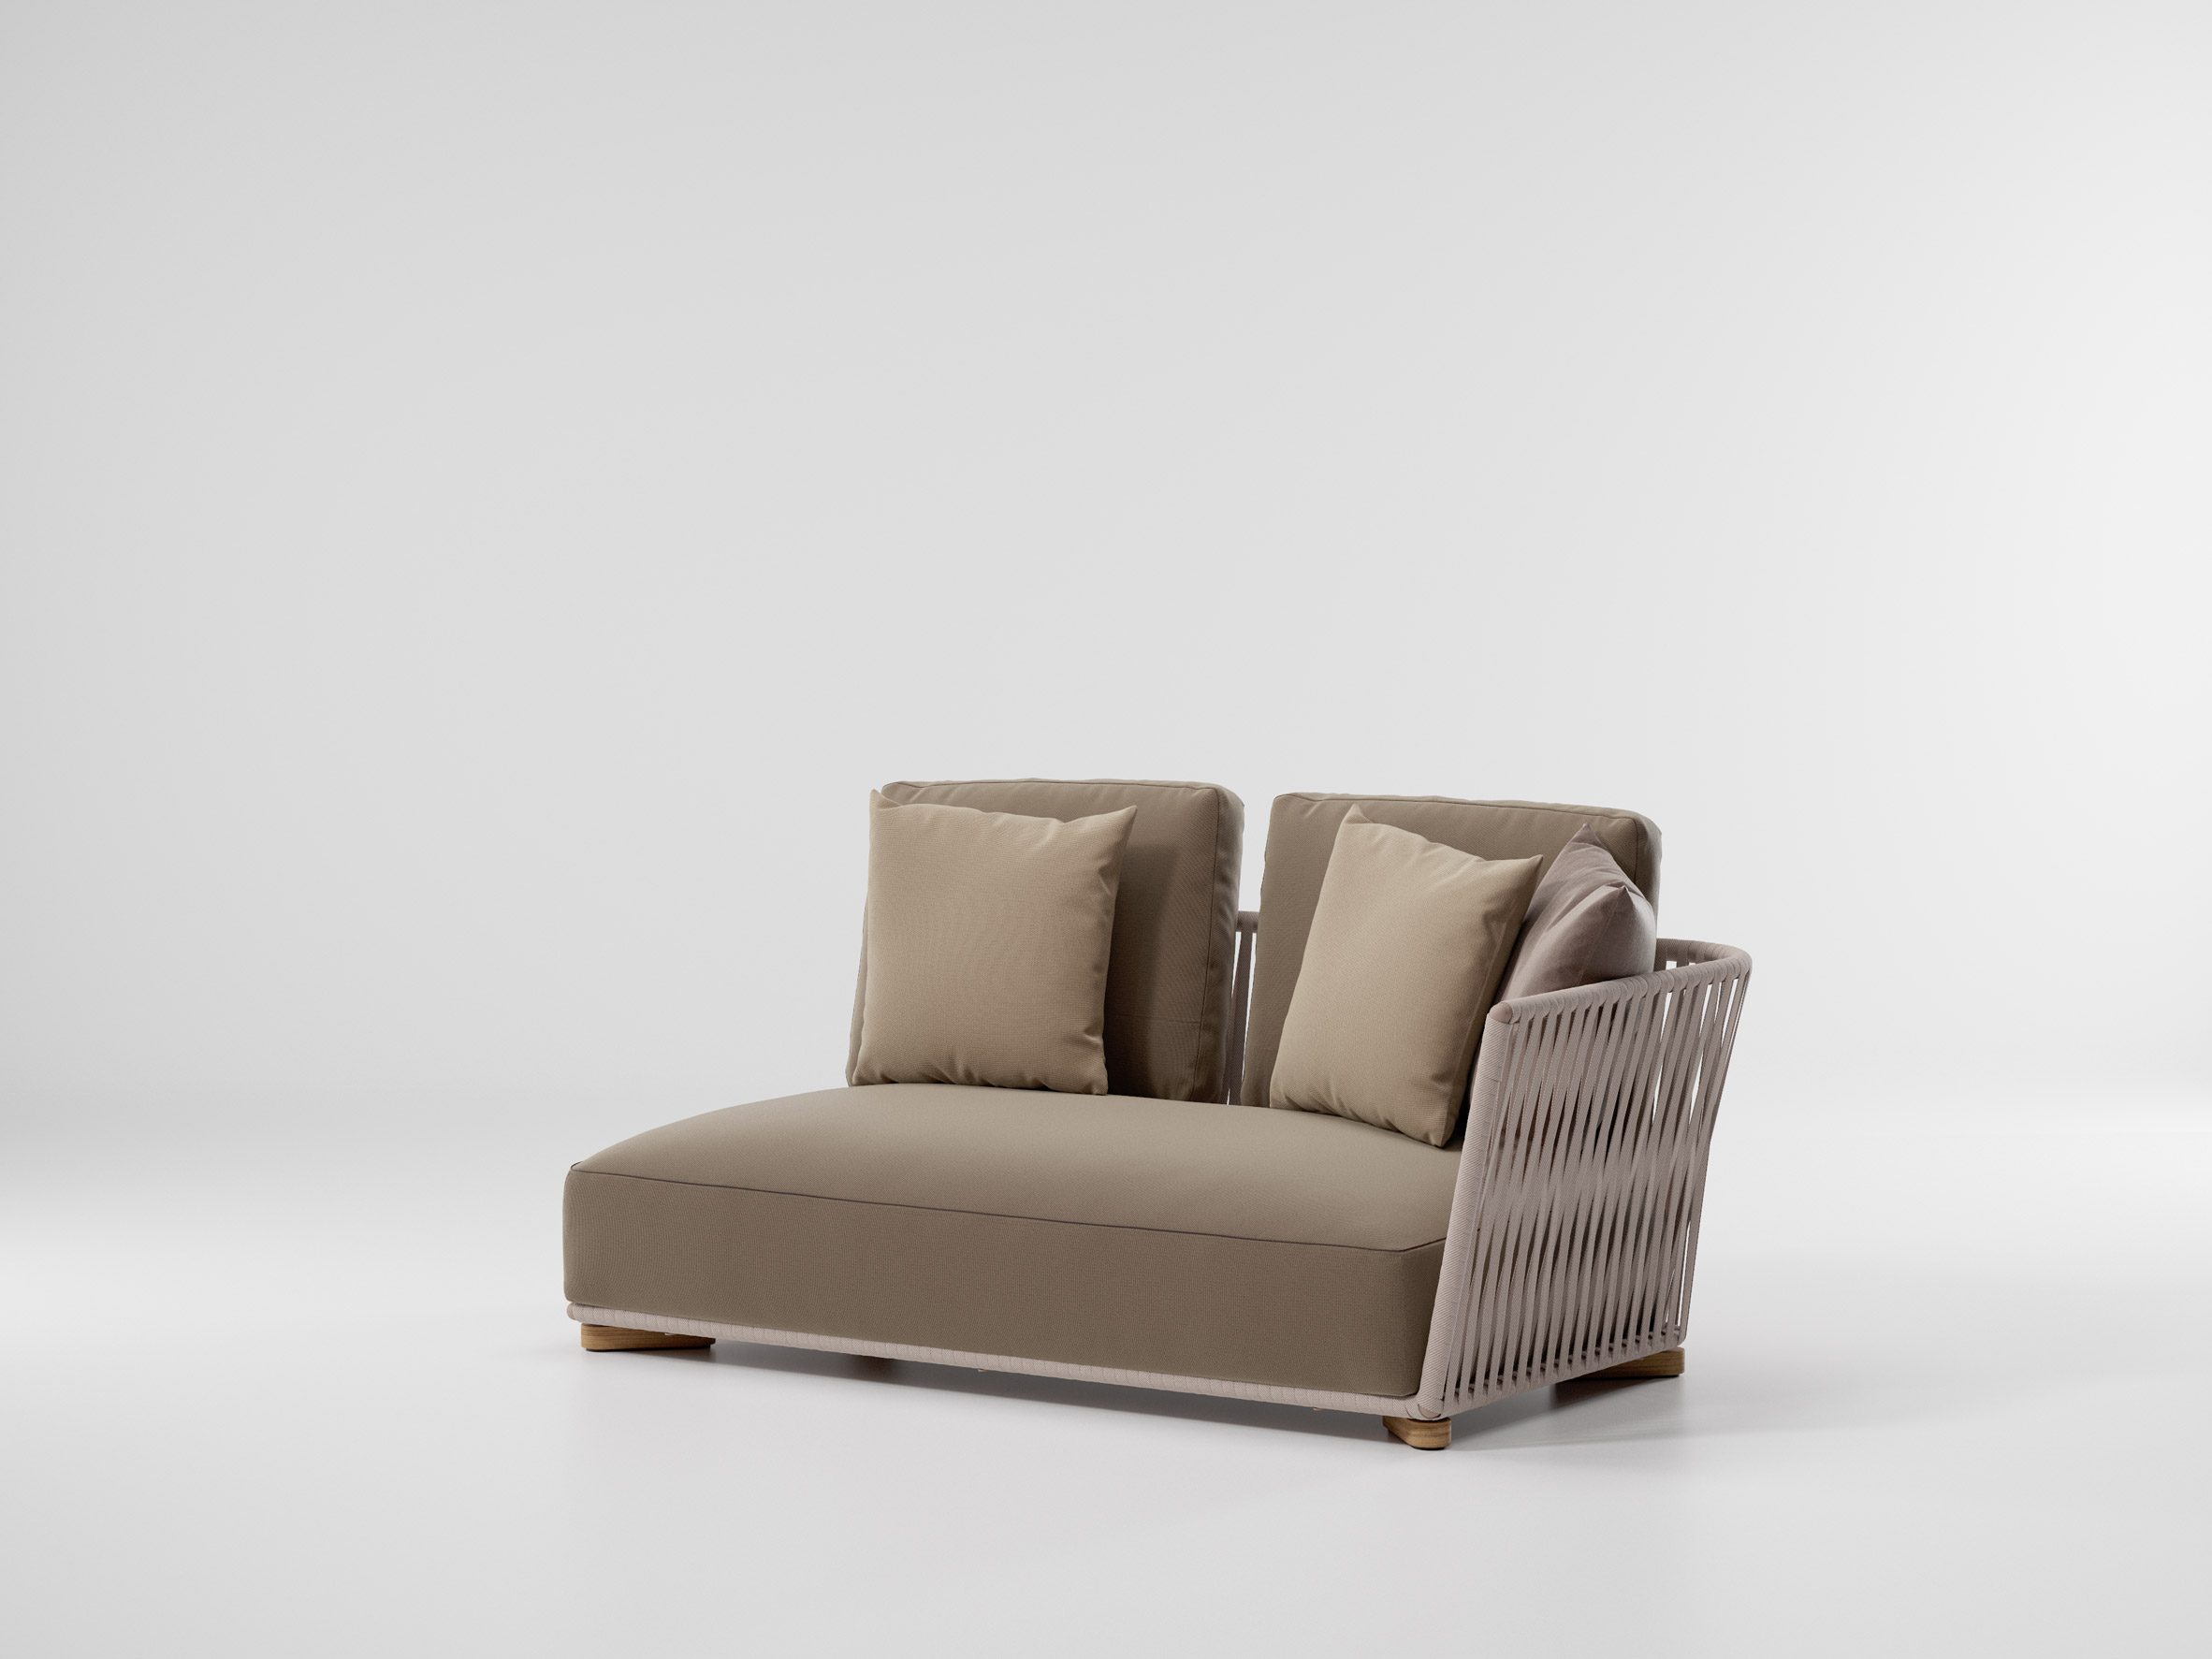 Modular sofa by Rodolfo Dordoni for Kettal